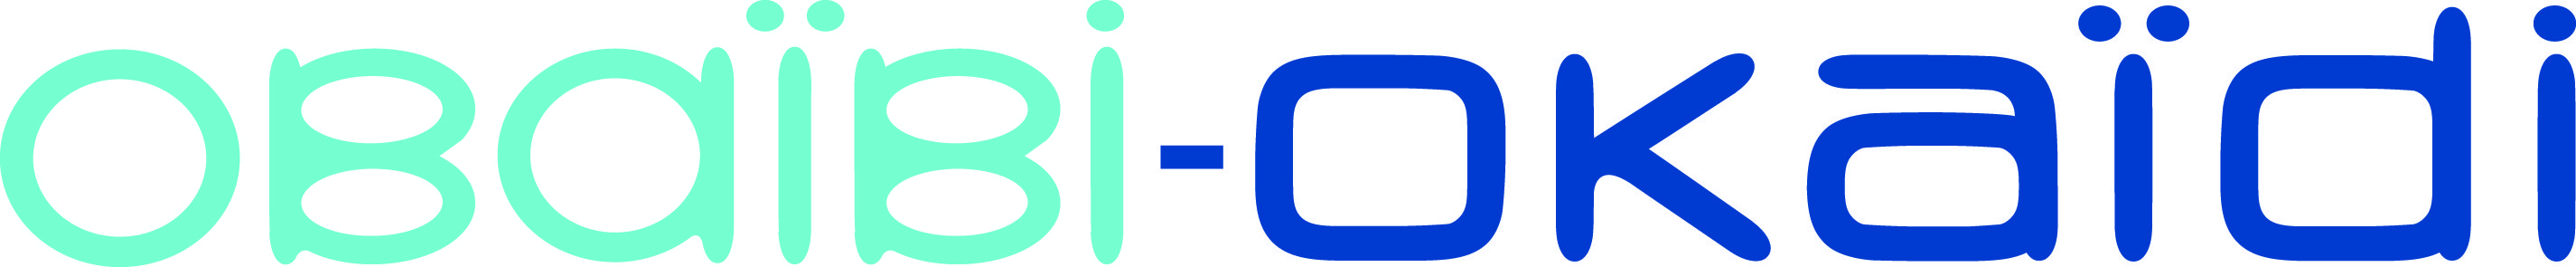 Okaidi logo